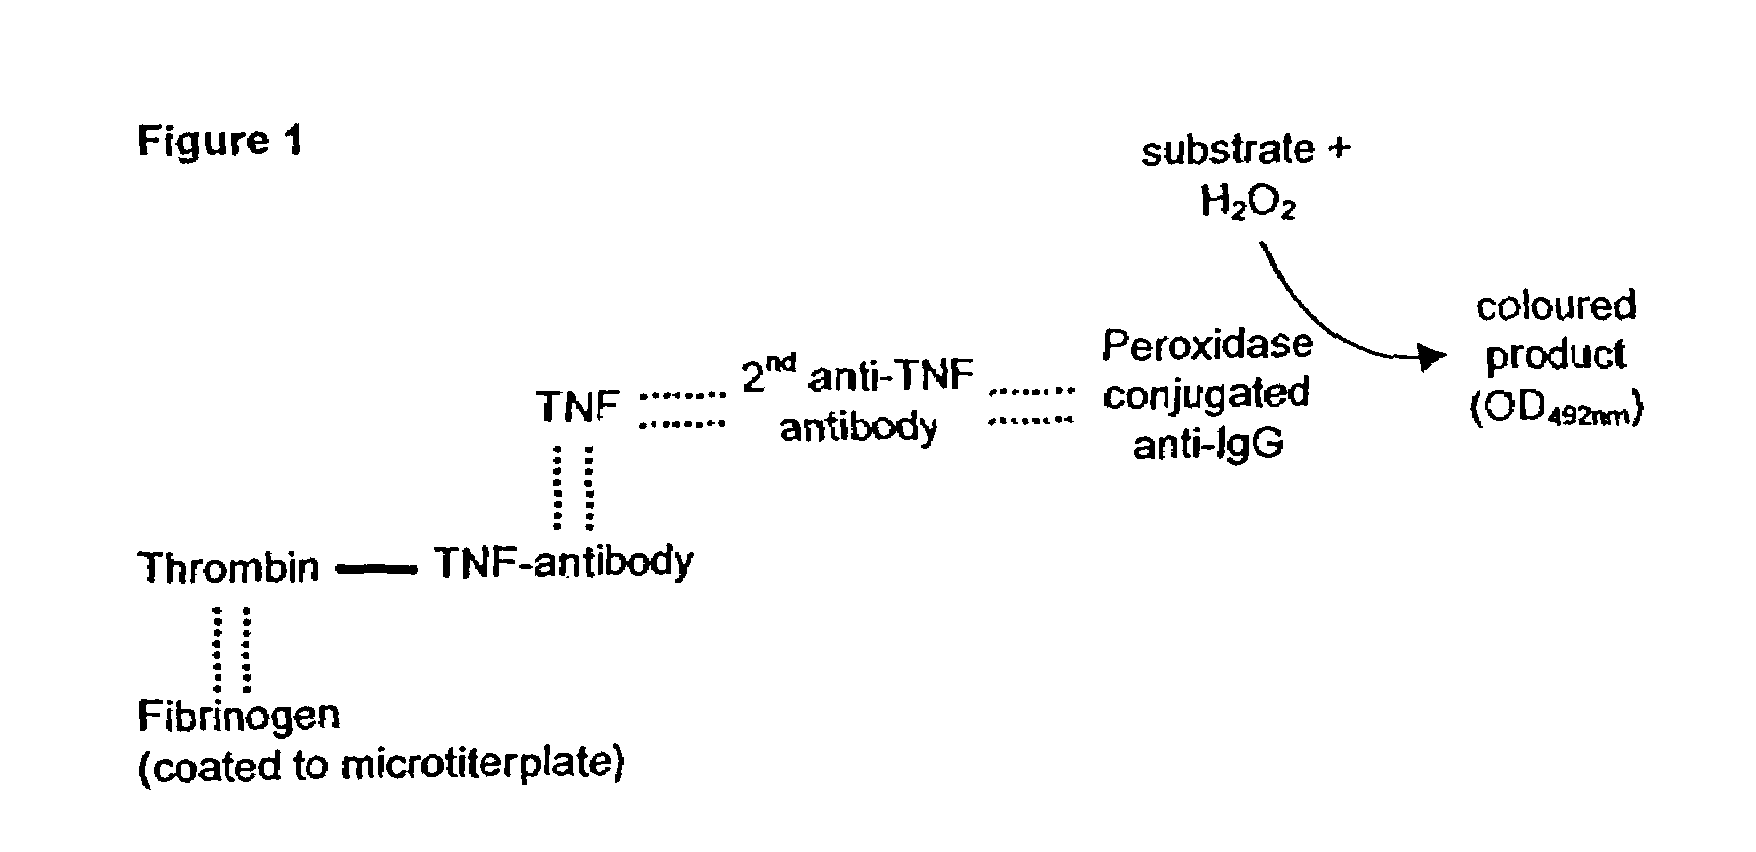 Fibrin/fibrinogen-binding conjugate